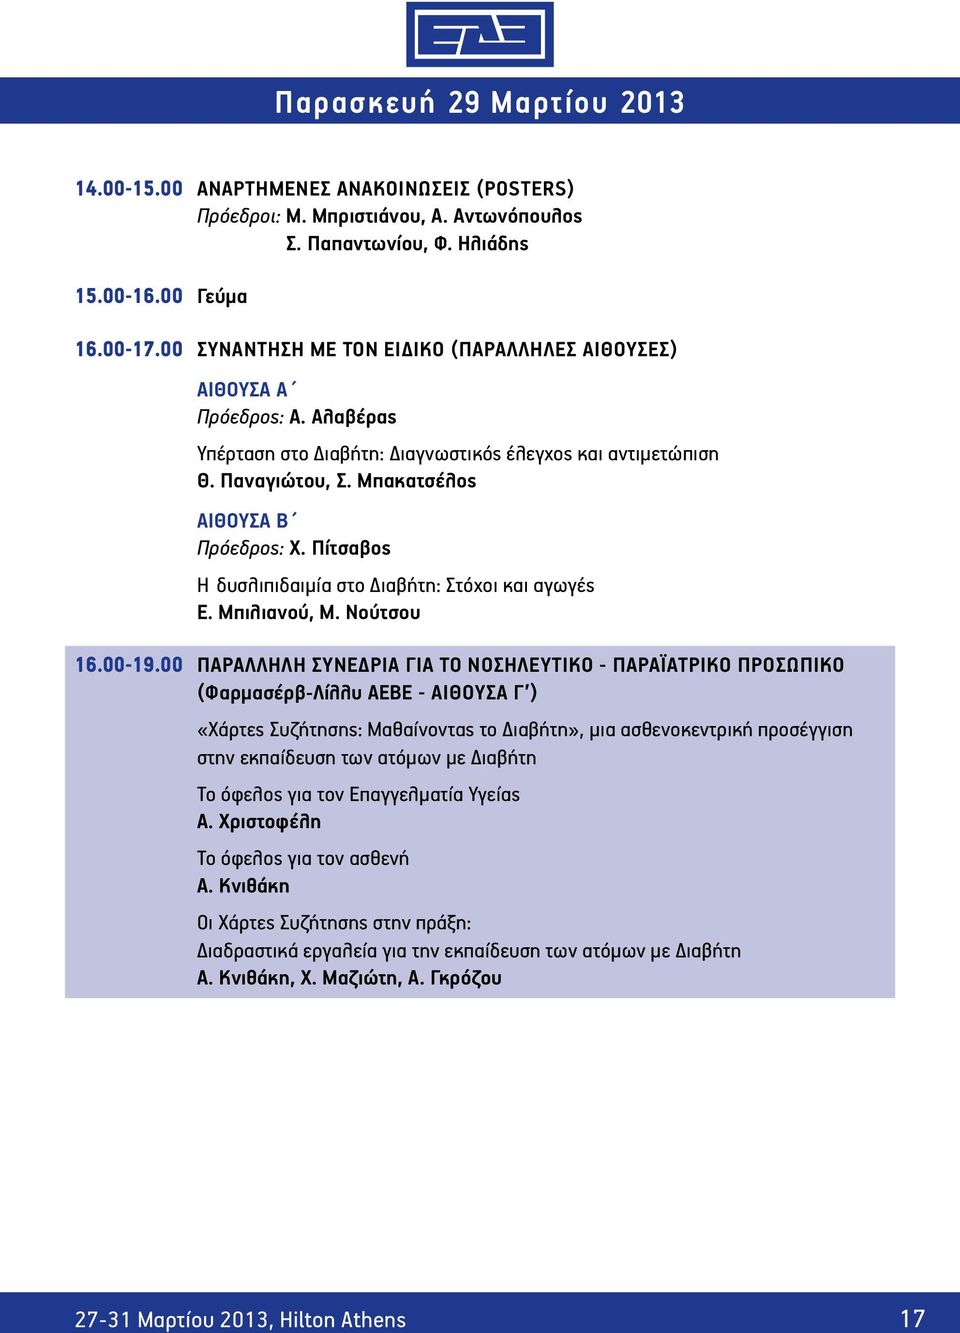 Πίτσαβος Η δυσλιπιδαιμία στο Διαβήτη: Στόχοι και αγωγές Ε. Μπιλιανού, Μ. Νούτσου 16.00-19.